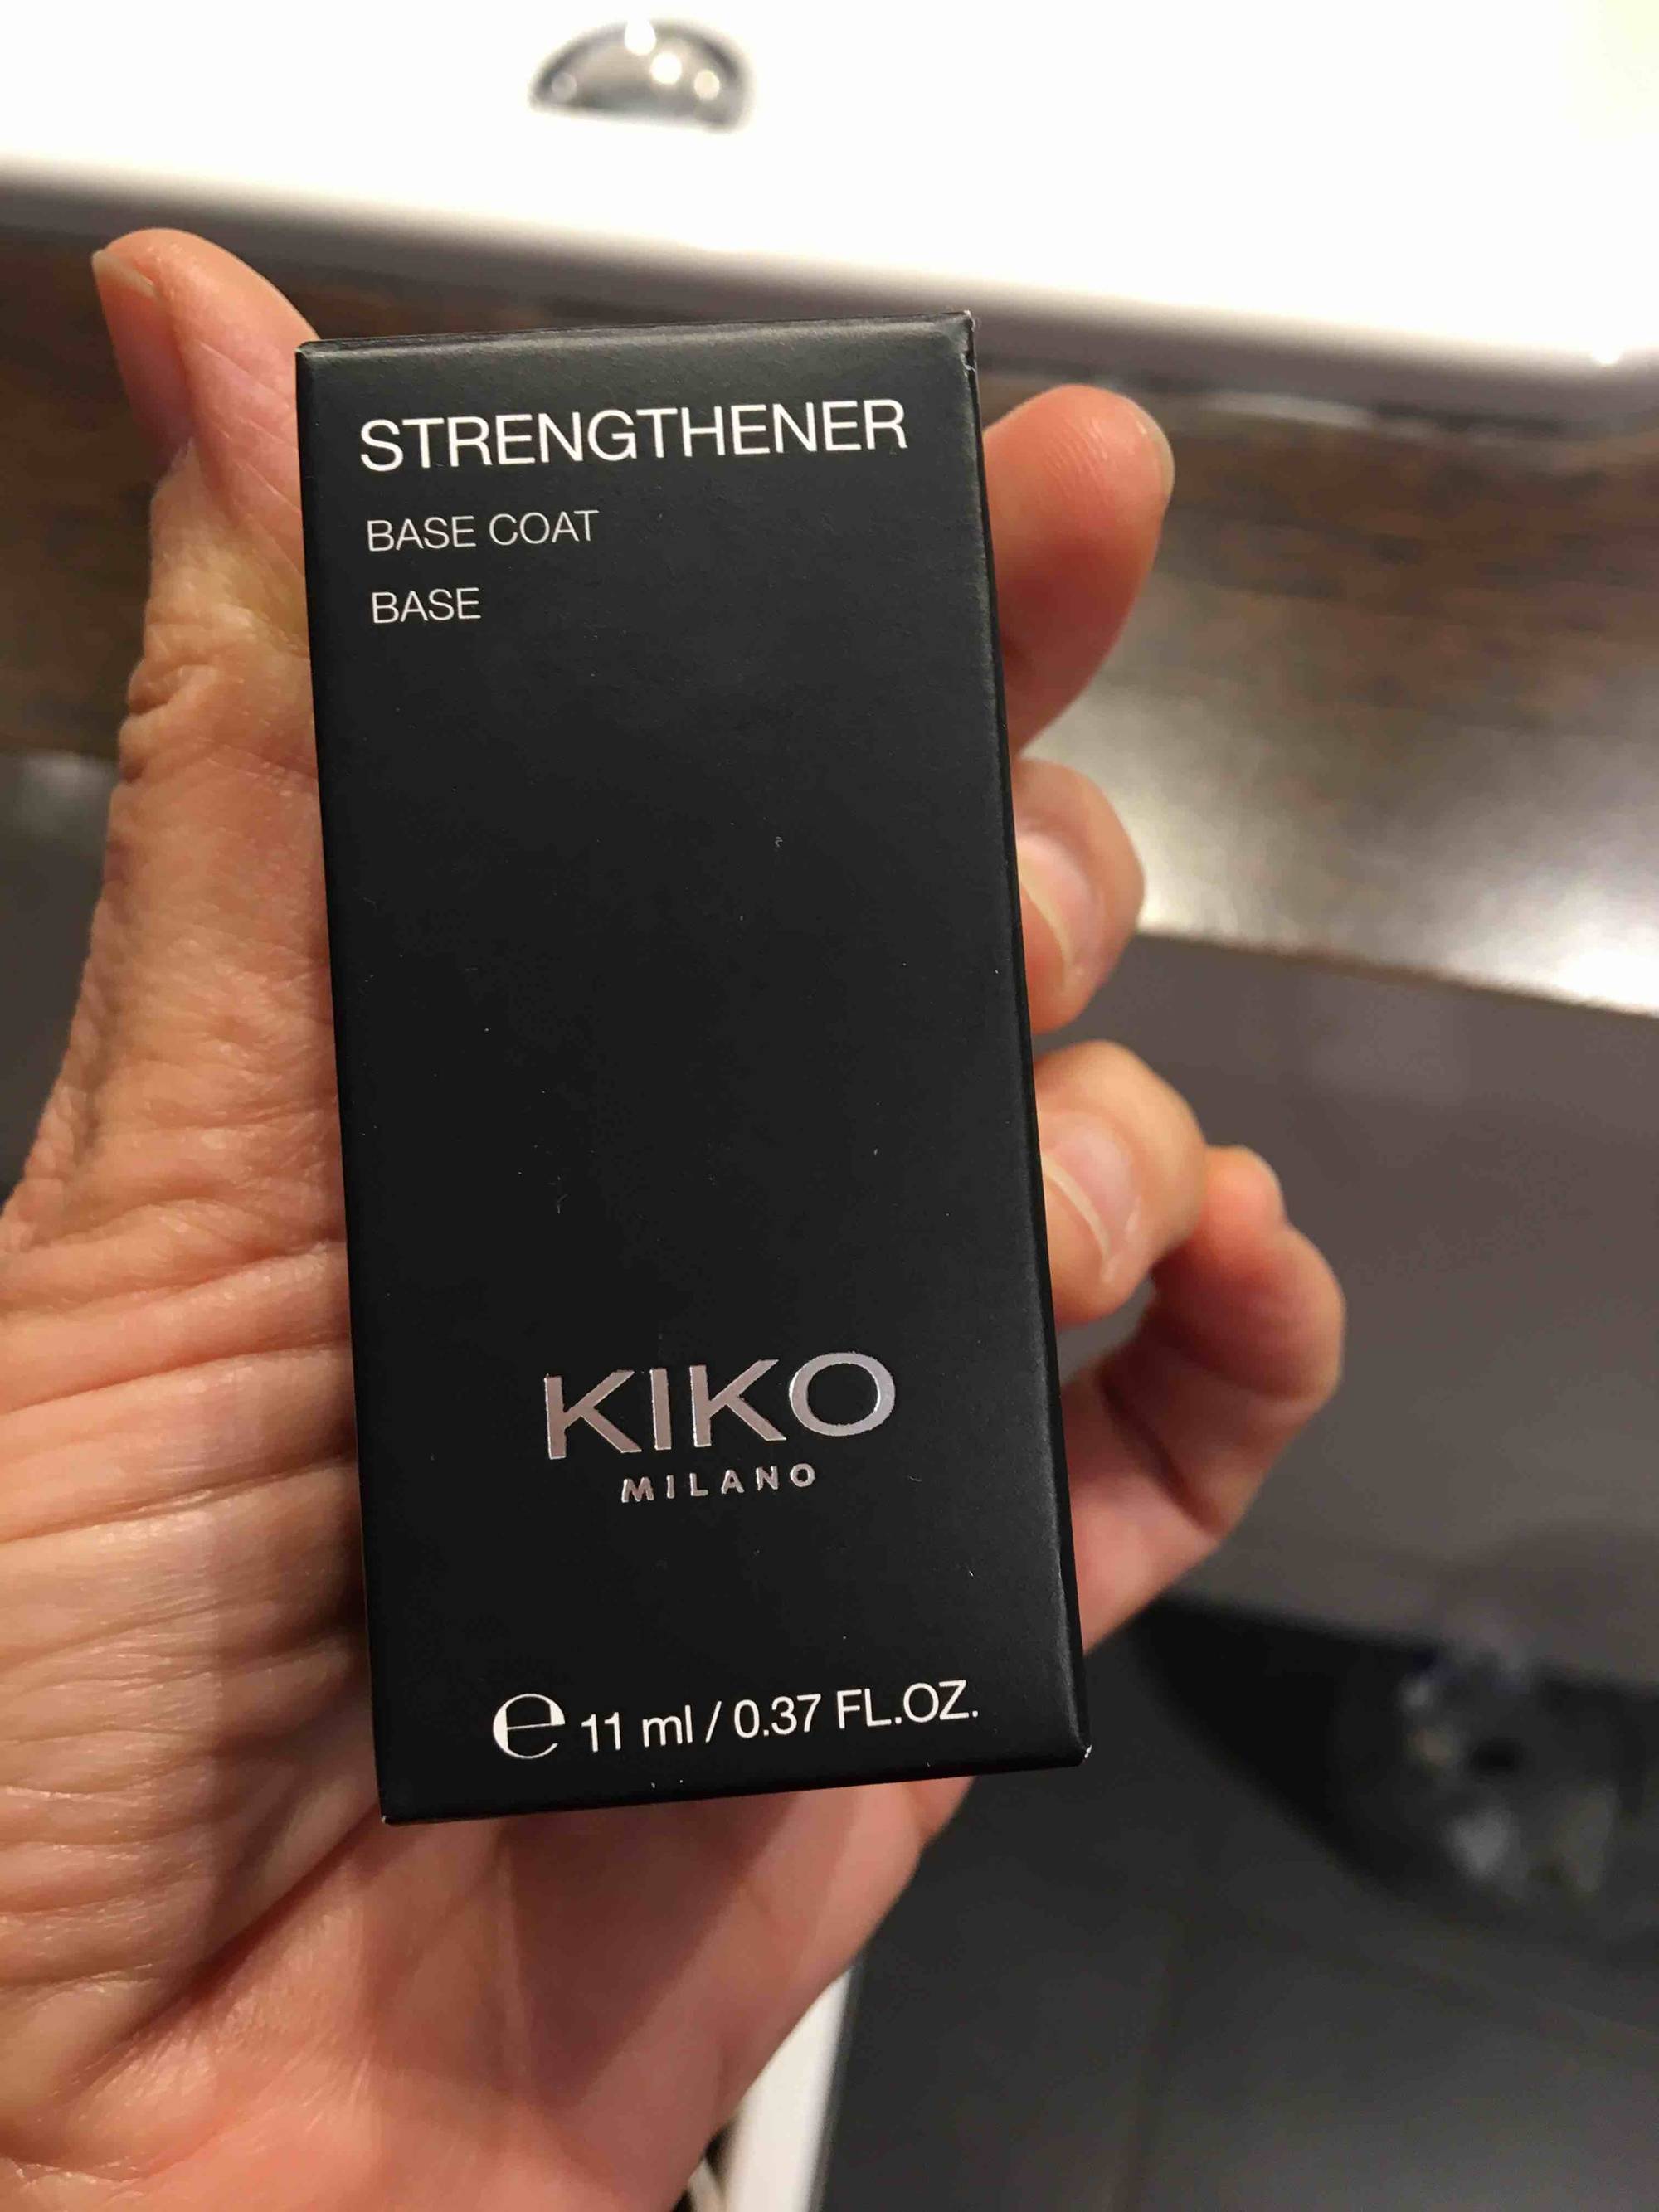 KIKO - Strengthener base coat